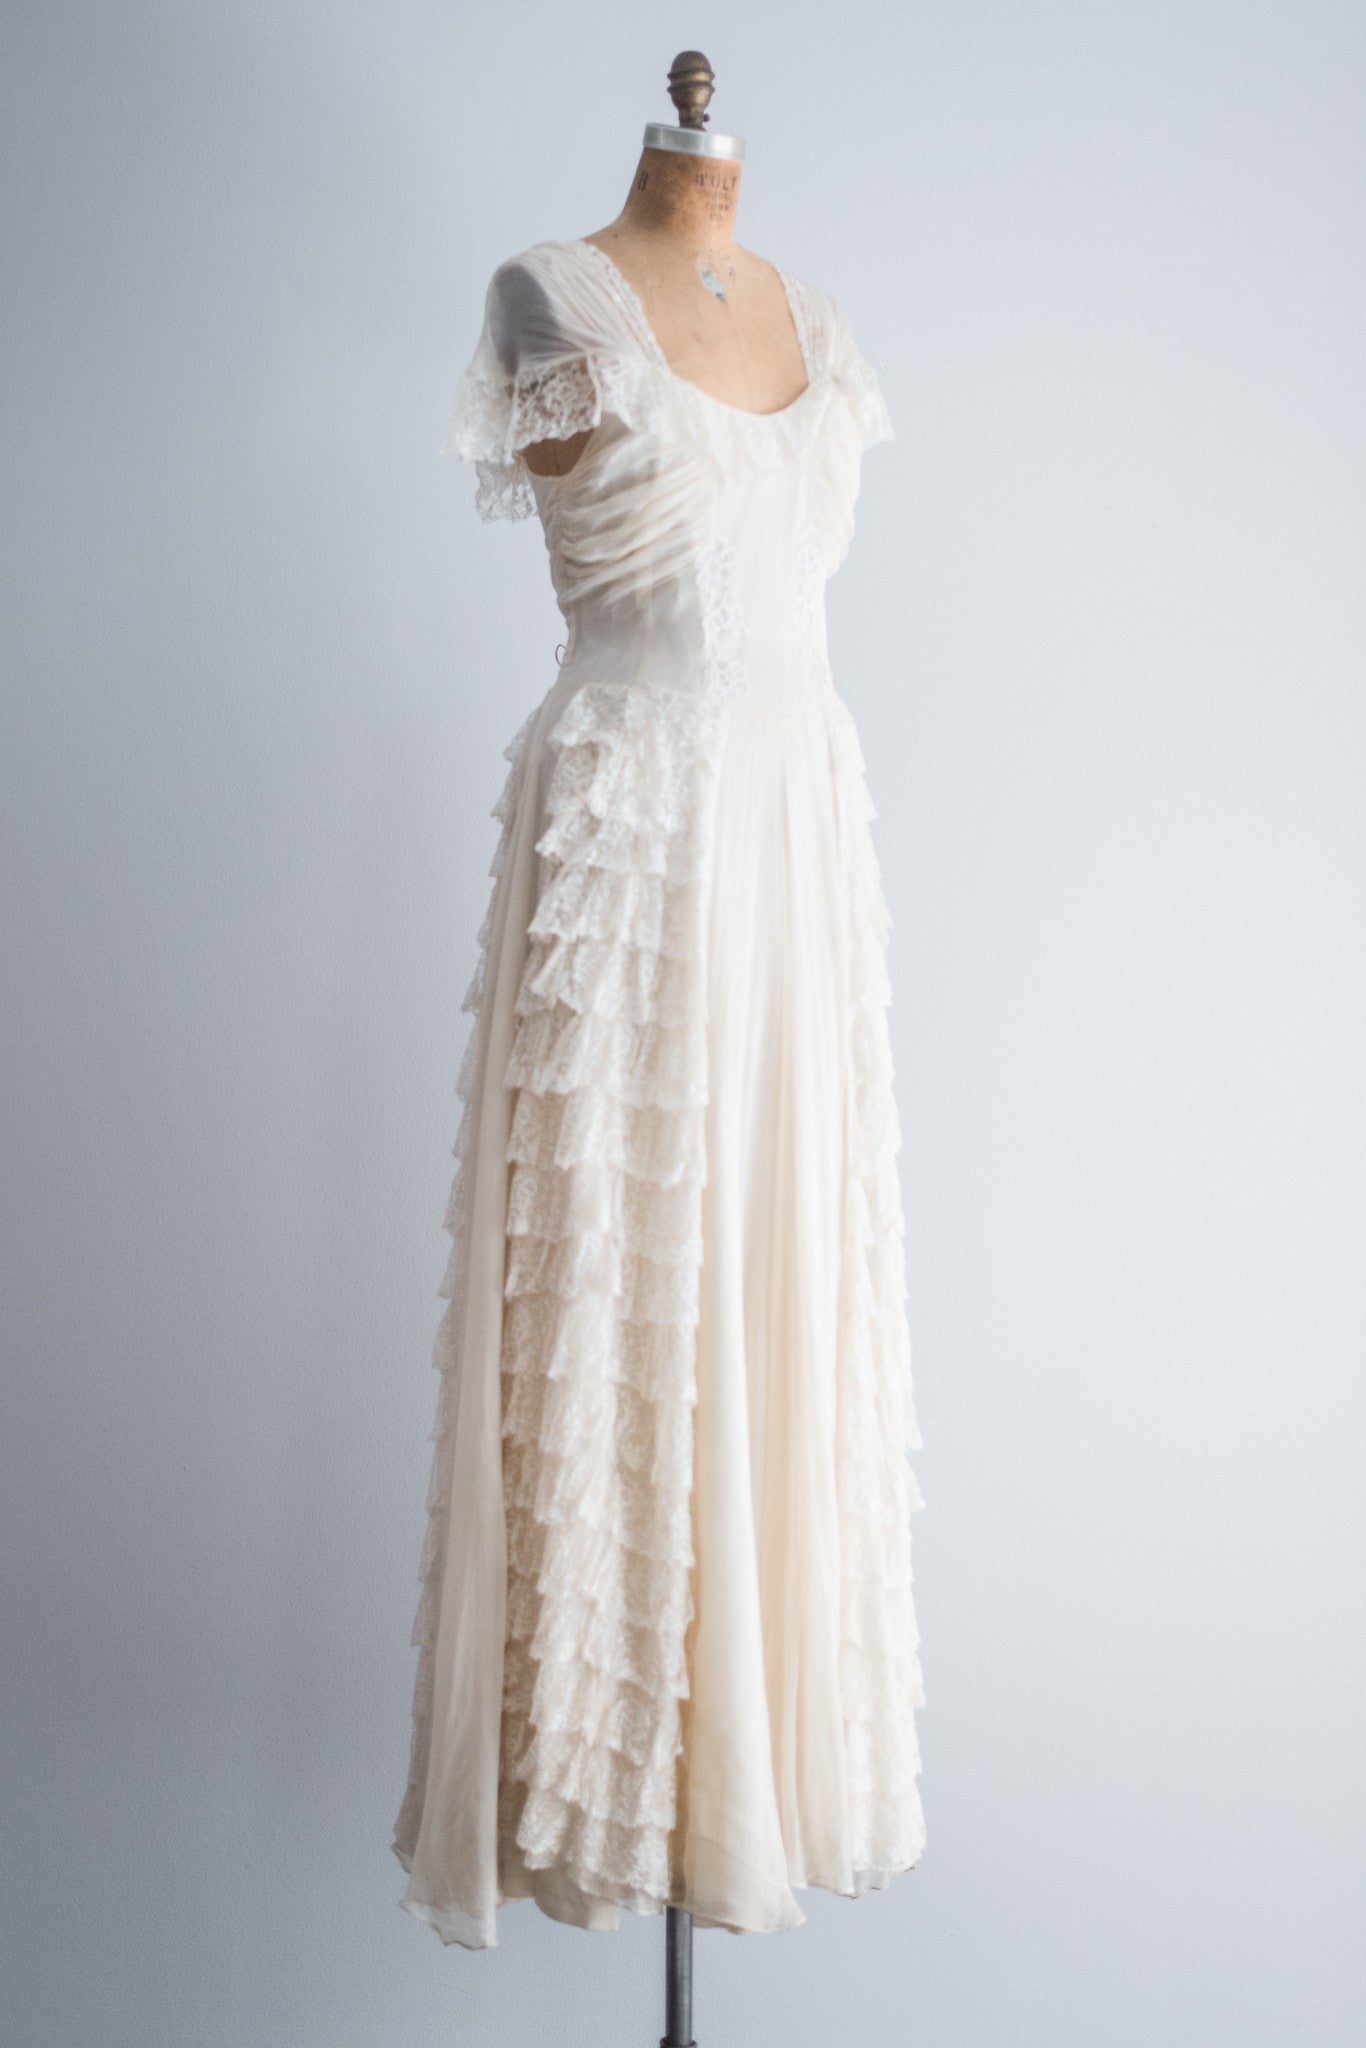 1930s Silk Chiffon and Lace Gown - S/M | G O S S A M E R